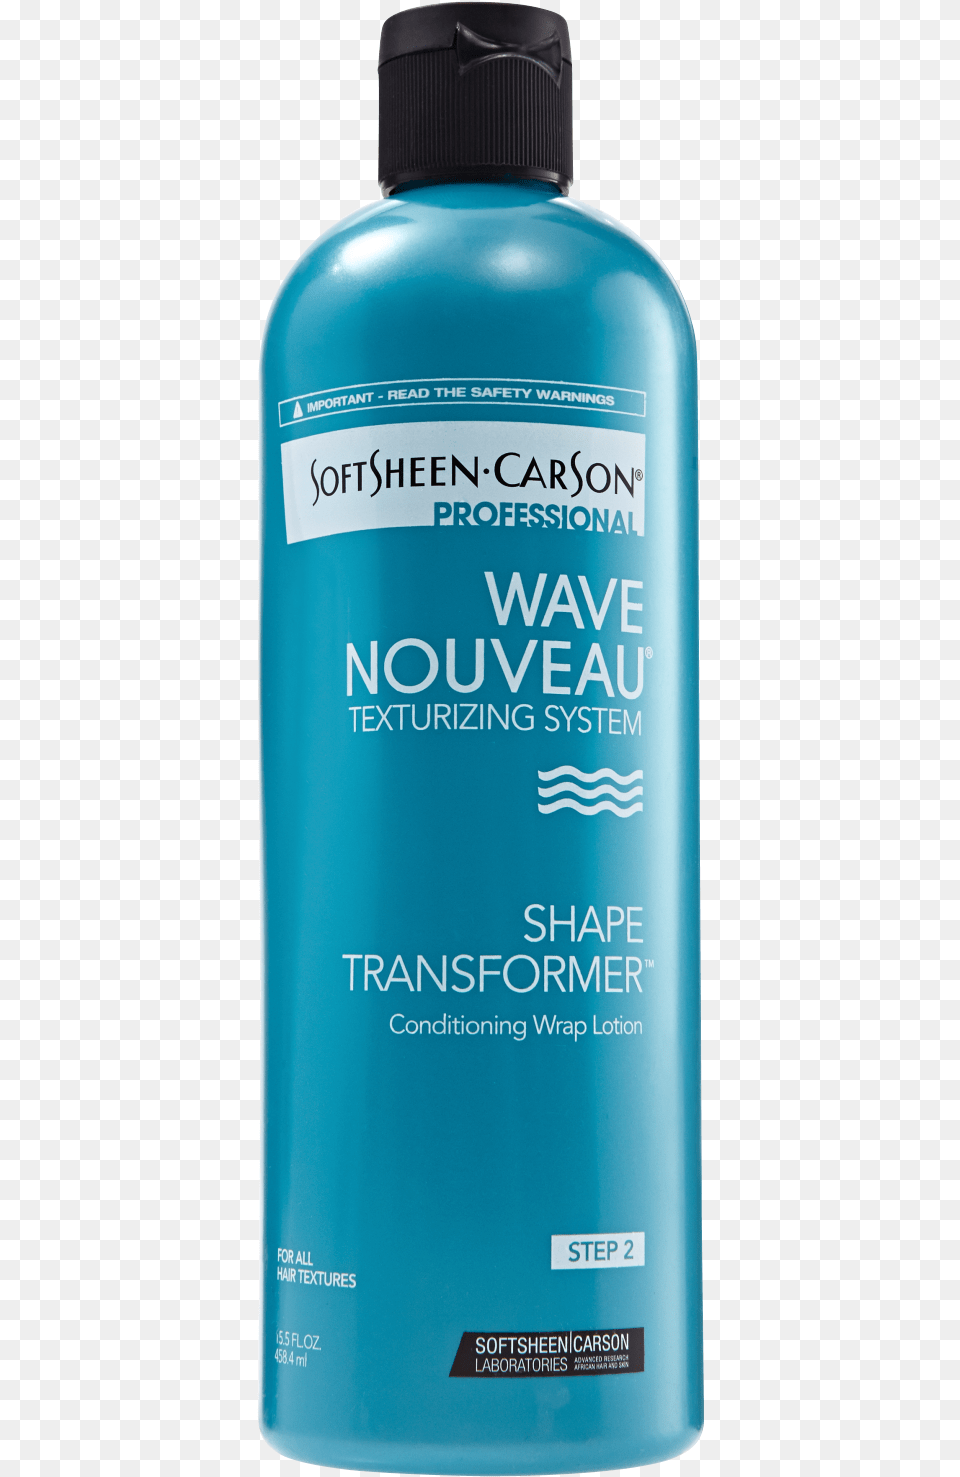 Wave Nouveau Perm Lotion, Bottle, Cosmetics, Perfume, Shampoo Free Transparent Png